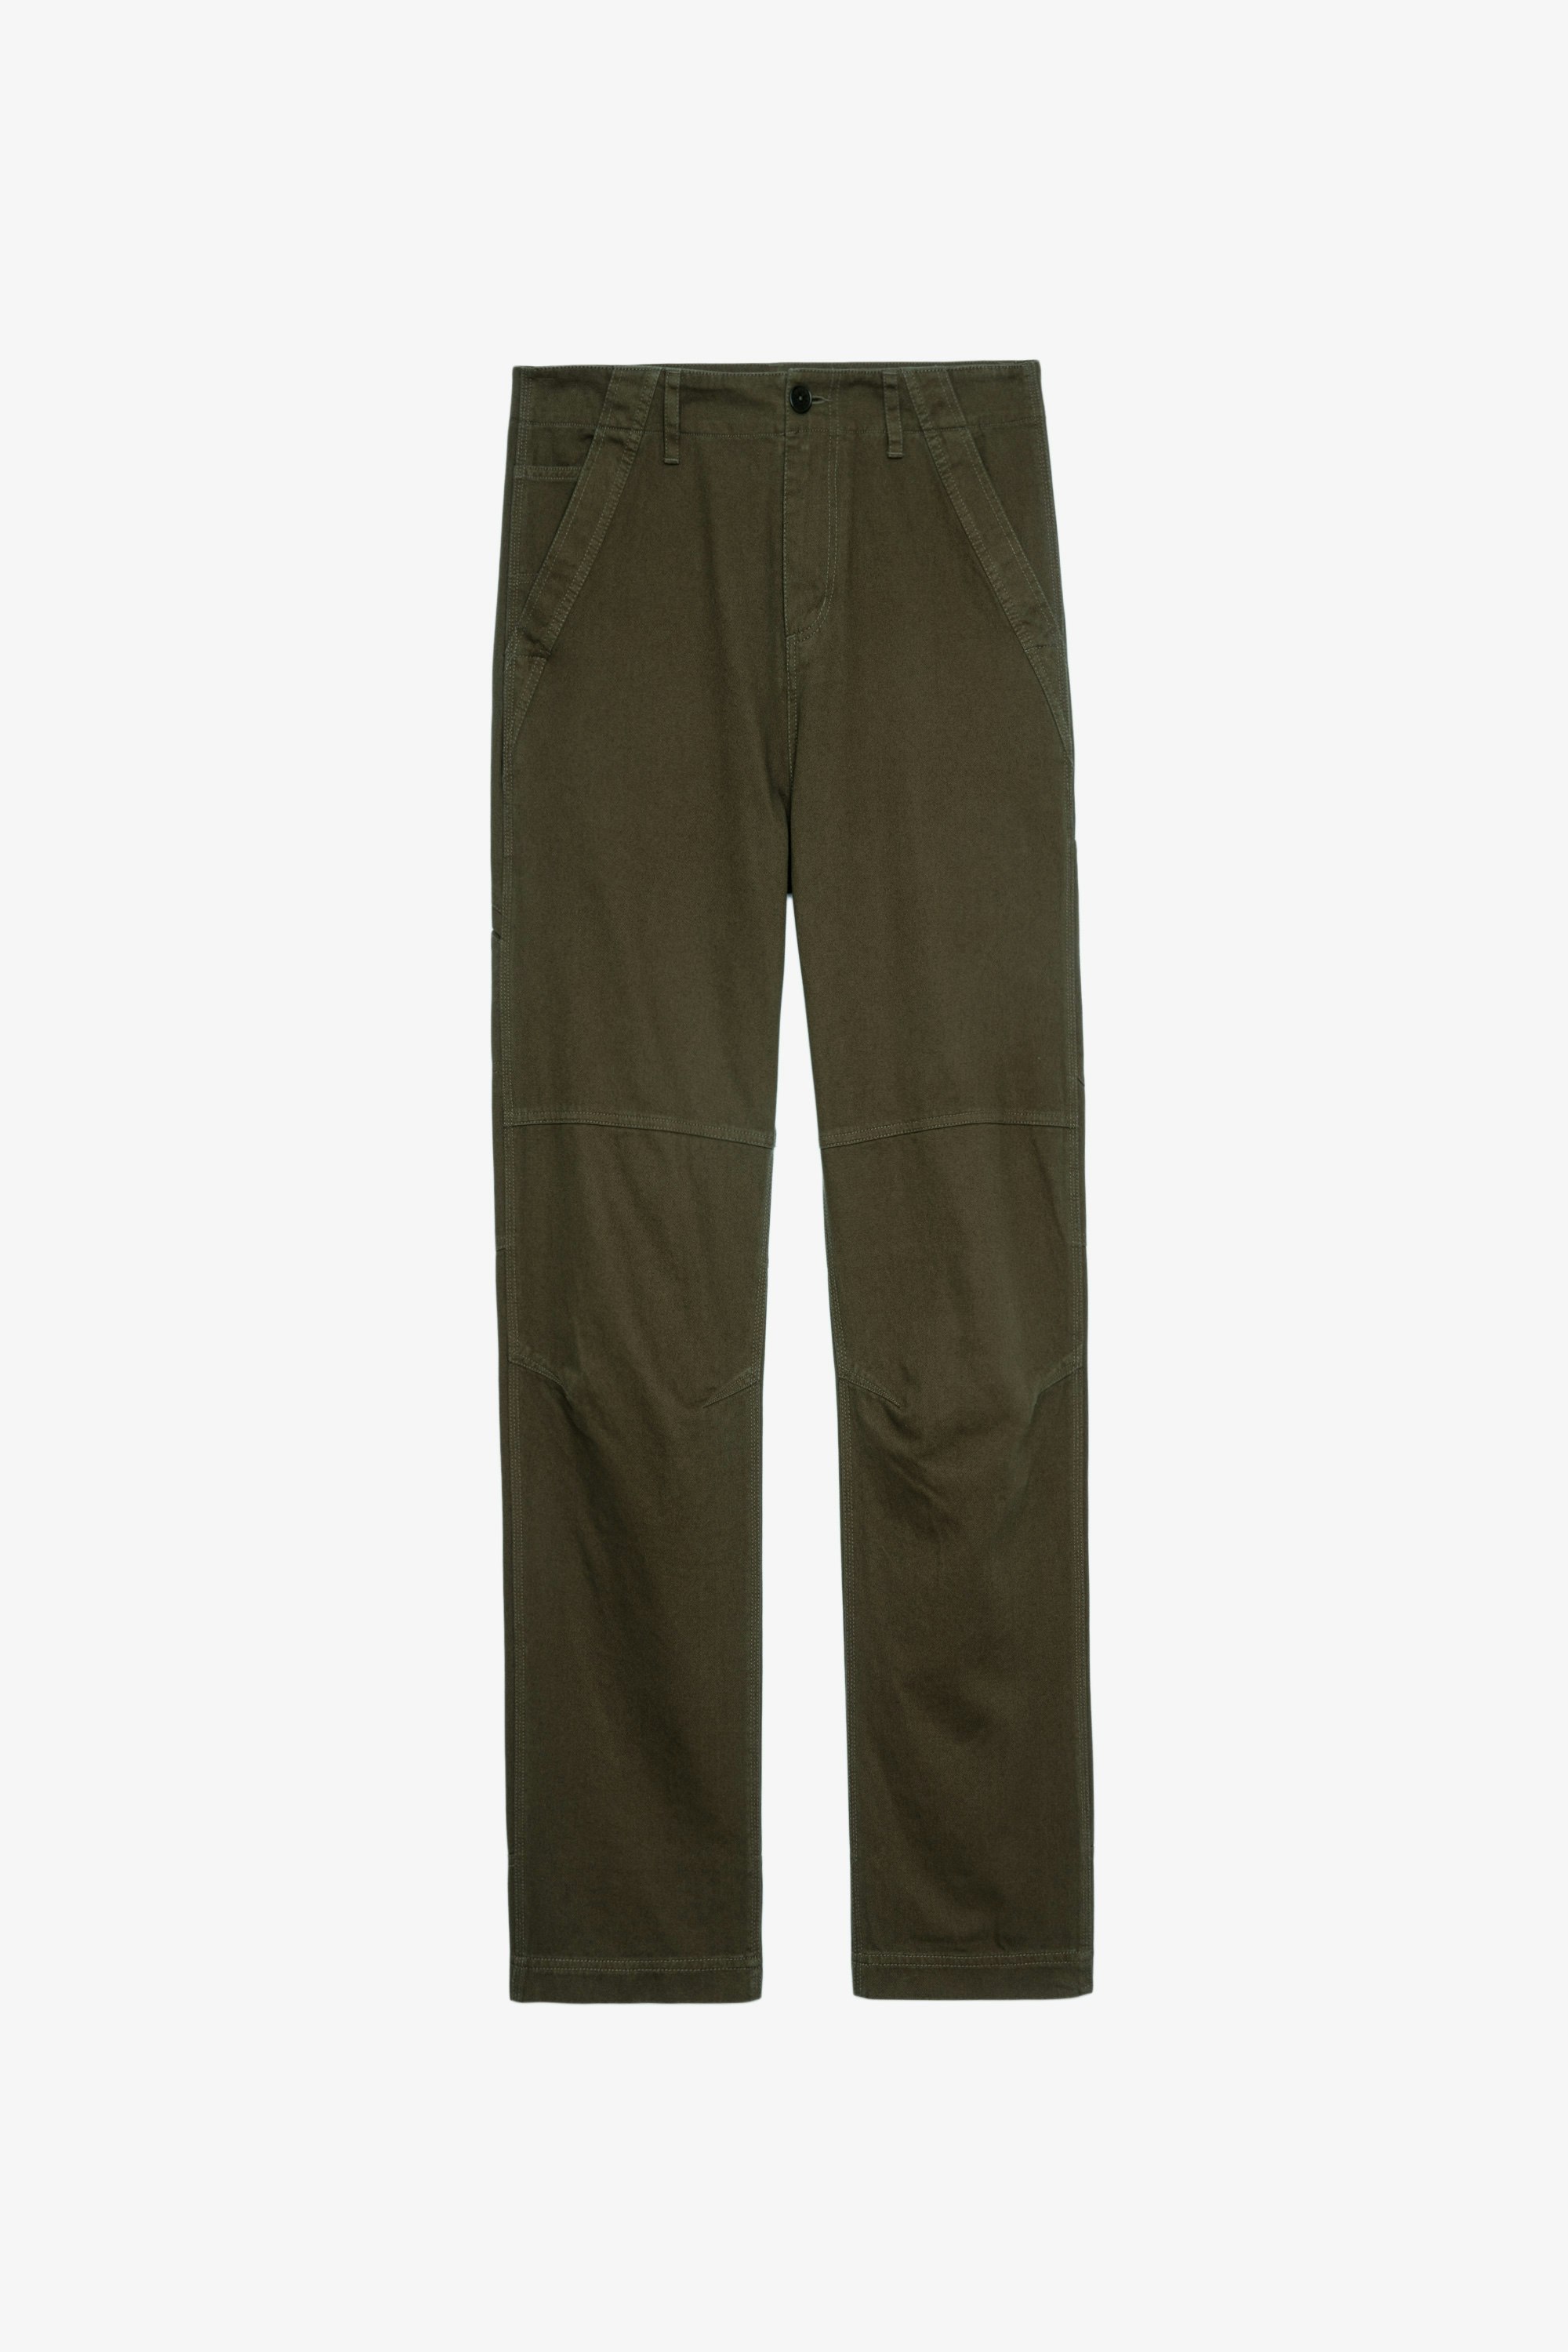 MEN FASHION Trousers Corduroy Navy Blue 40                  EU ZADIG & VOLTAIRE slacks discount 98% 